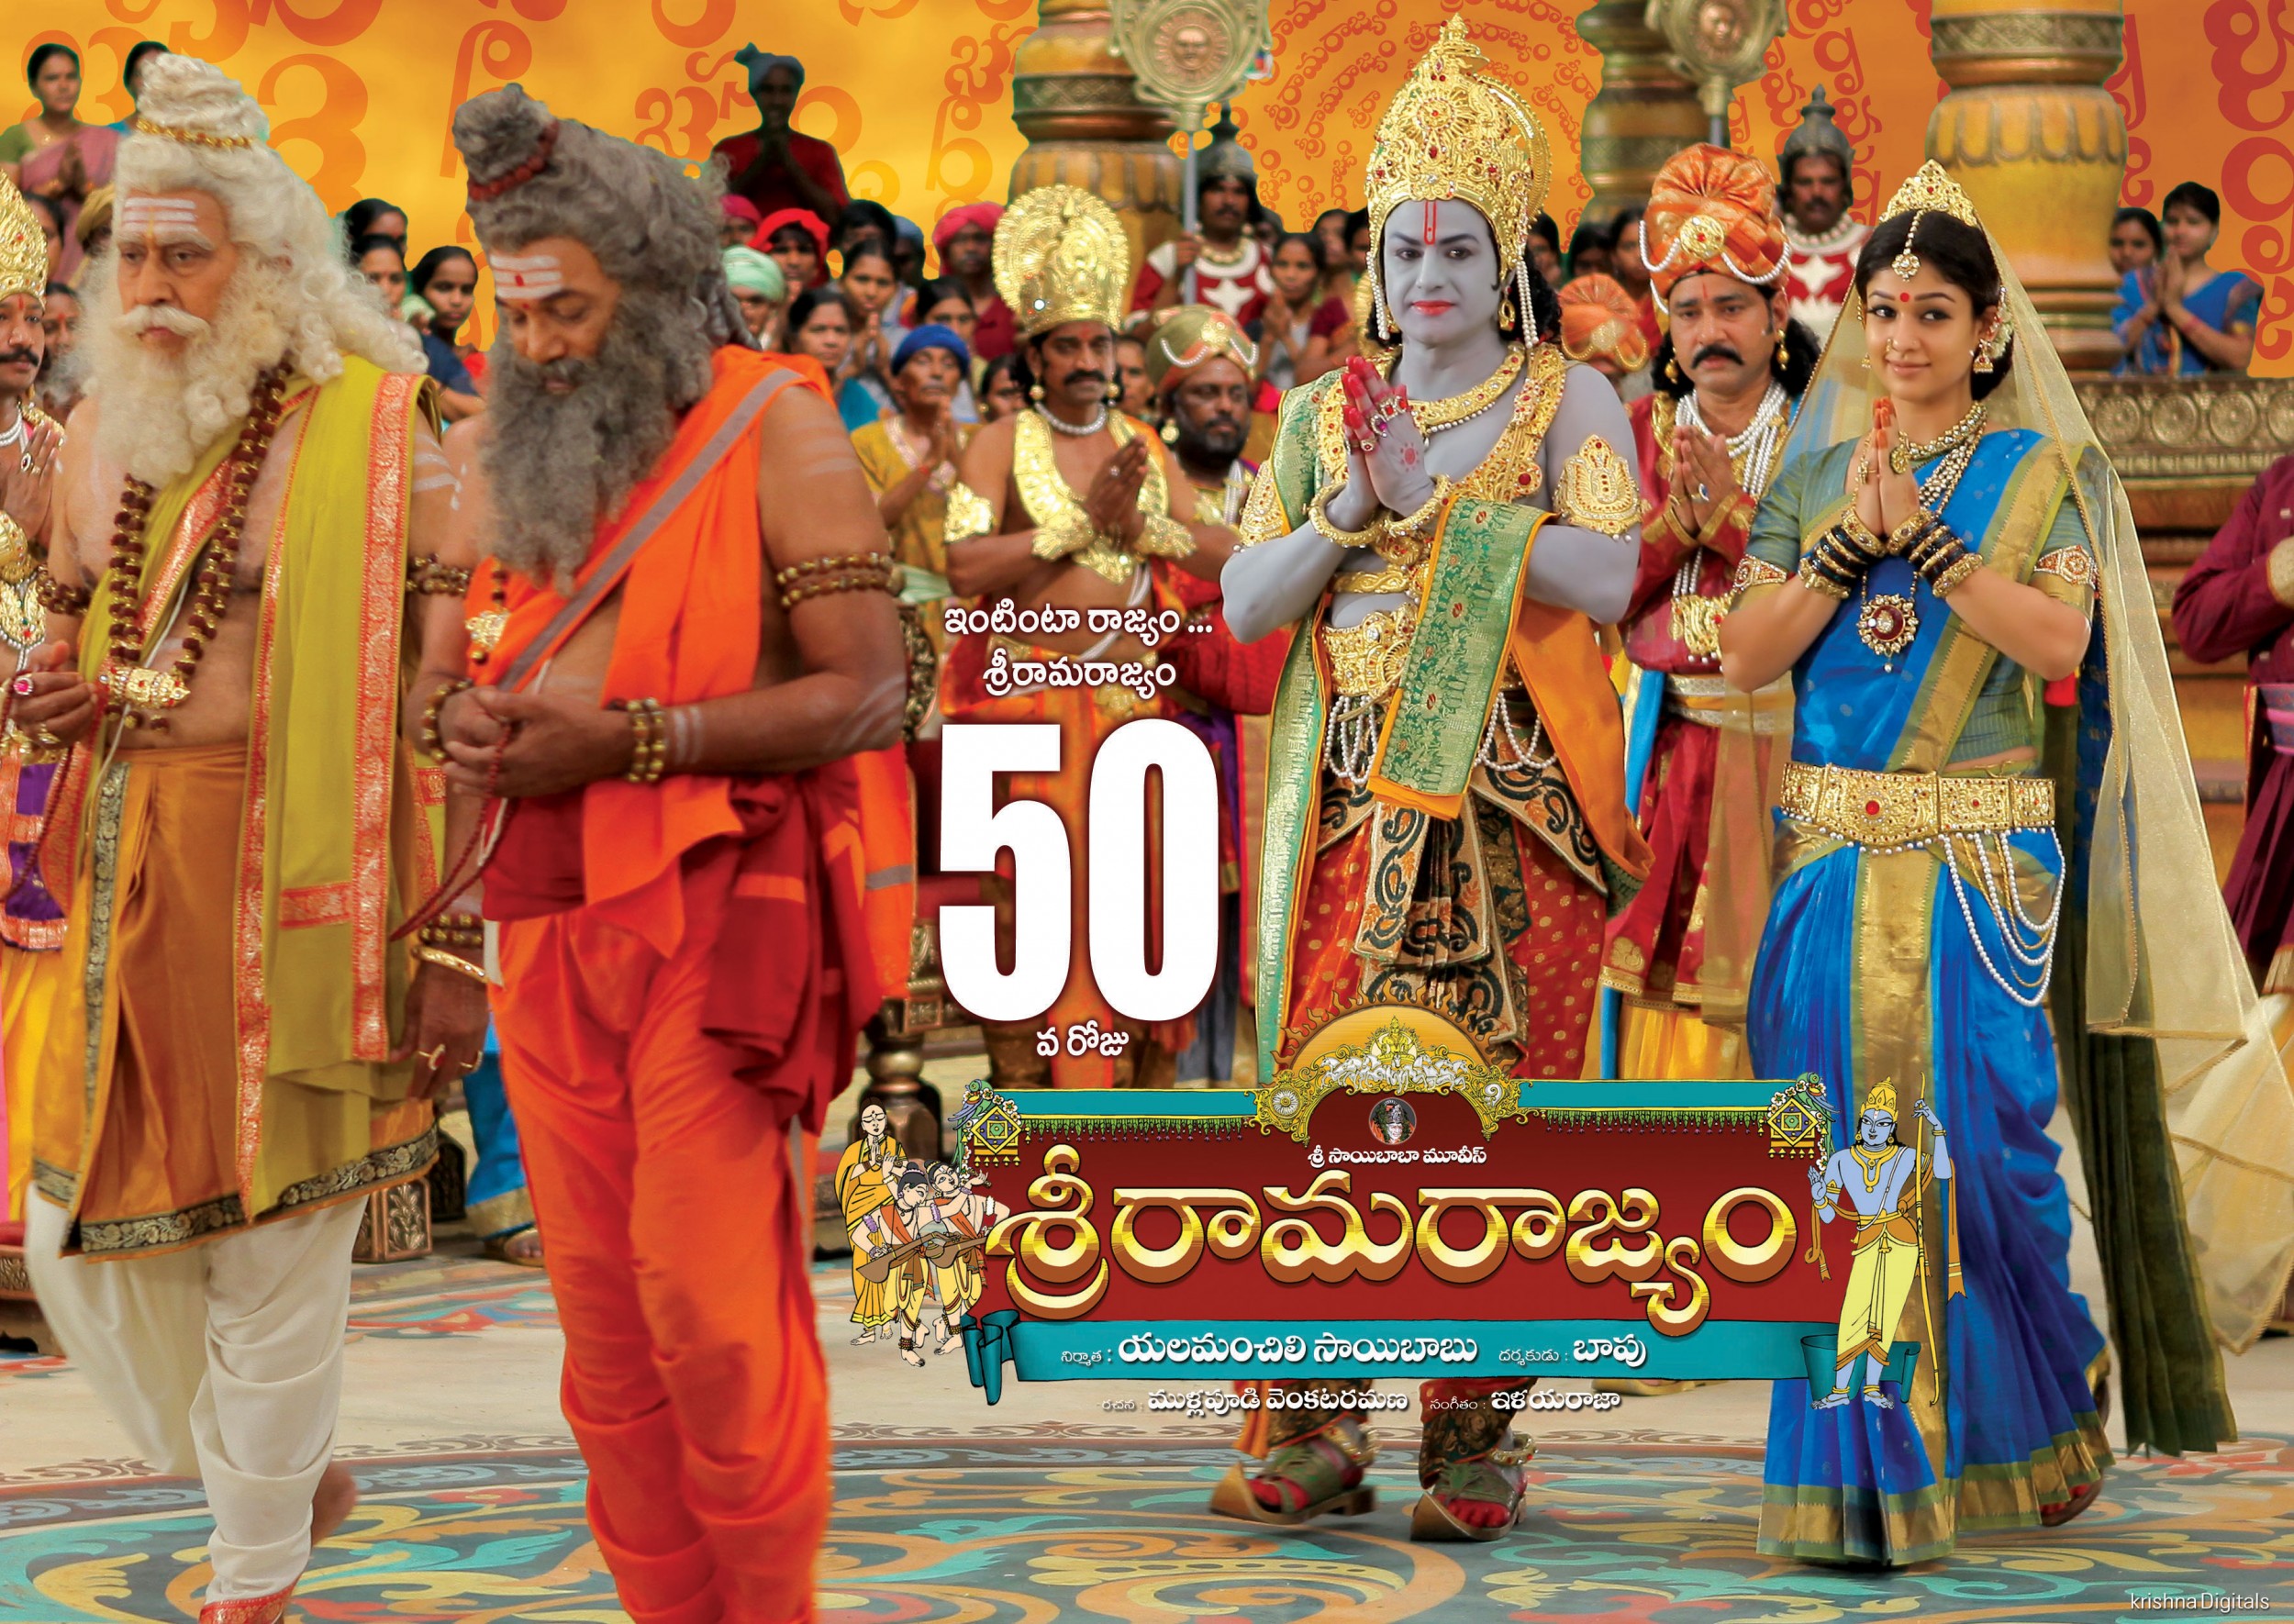 Mega Sized Movie Poster Image for Sri Rama Rajyam (#5 of 10)